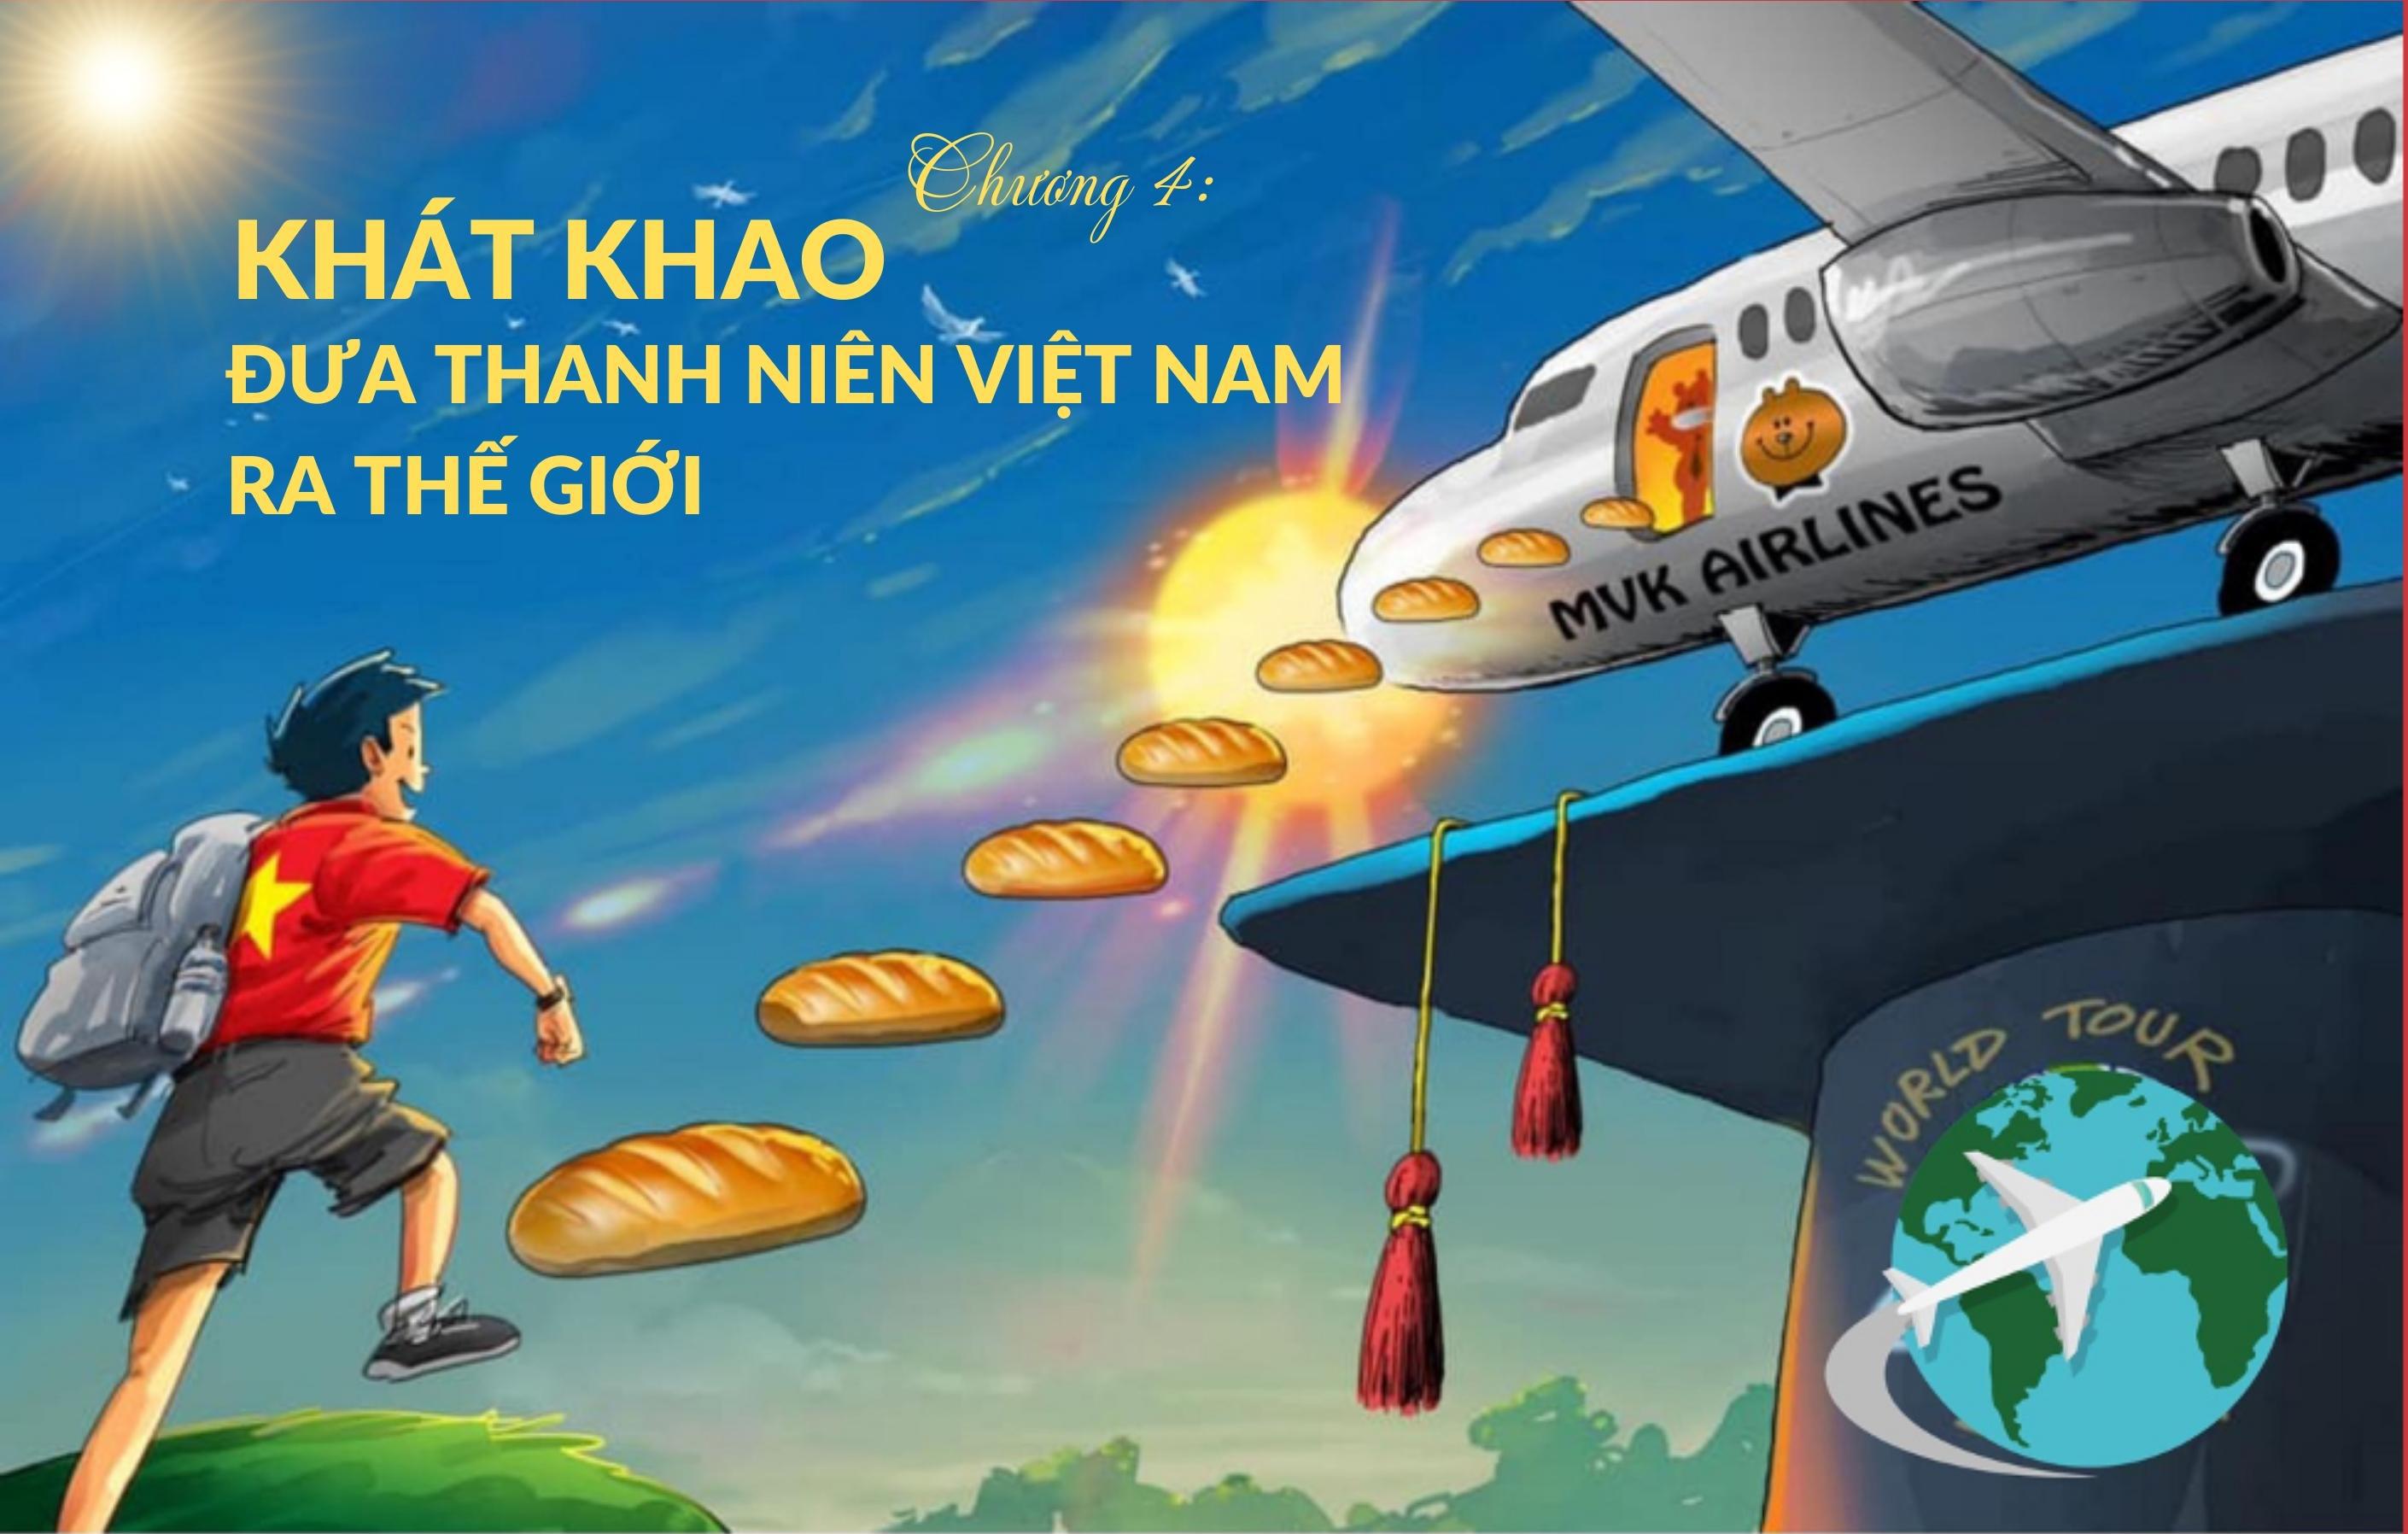 [Megastory] Ông Phạm Tuấn Anh, người sáng lập trường Minh Việt (MVA): Chương 4 - Khát khao đưa thanh niên Việt Nam ra thế giới